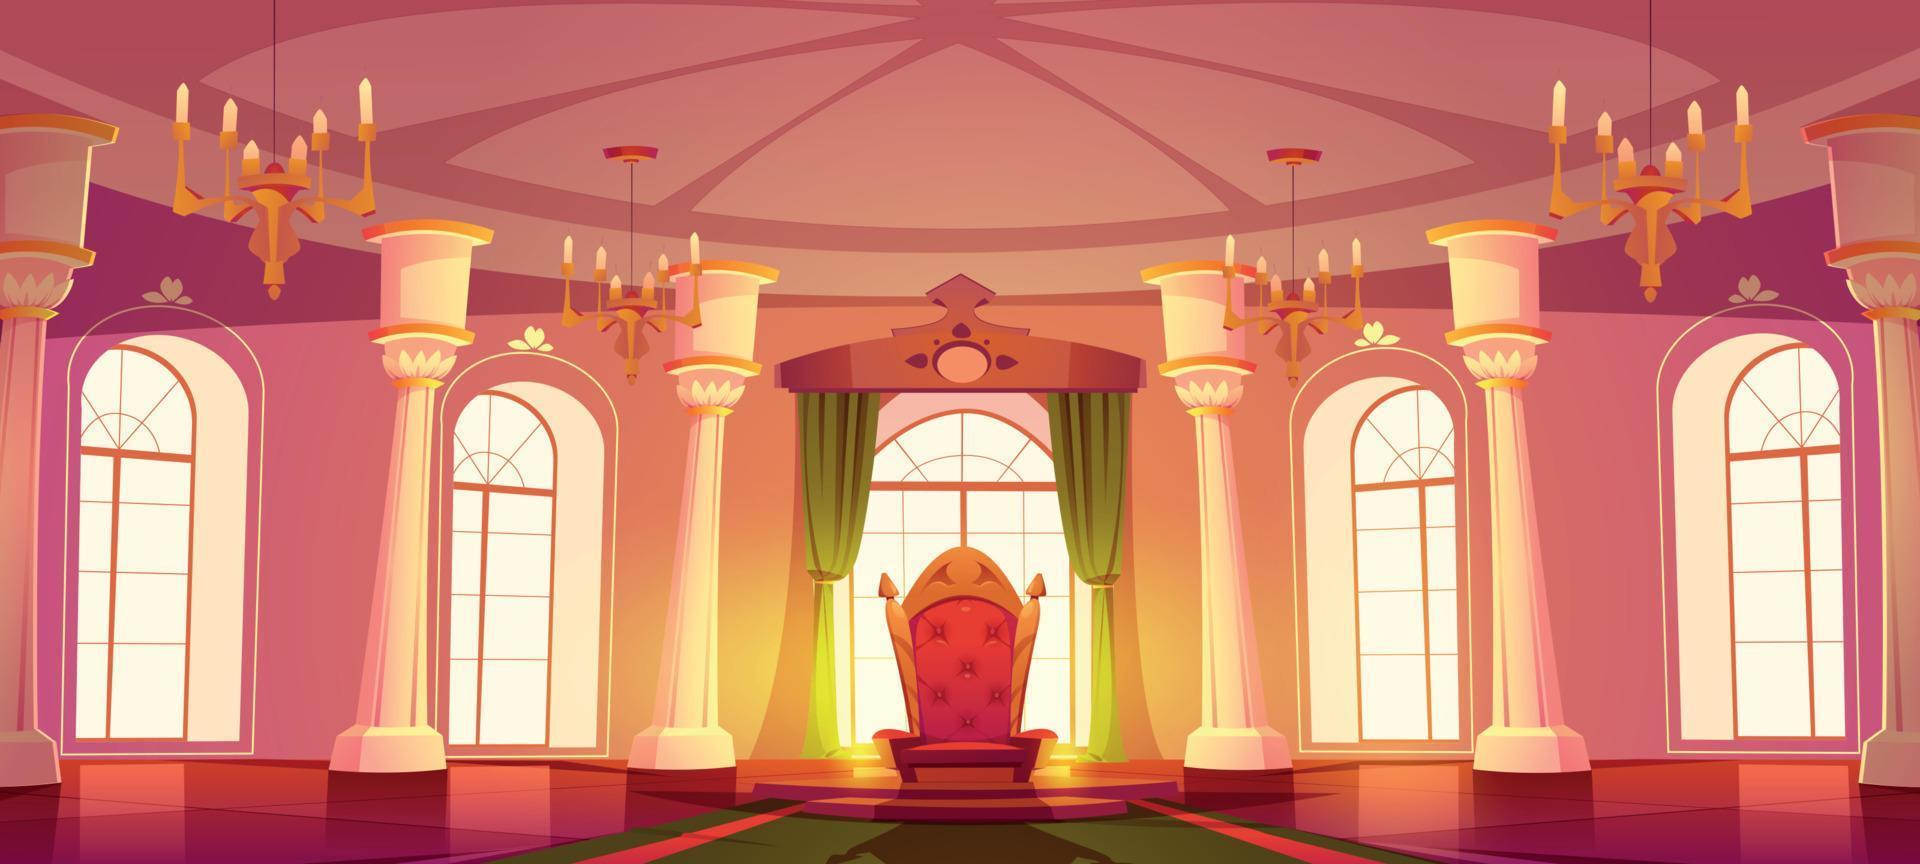 Cartoon throne room interior vector